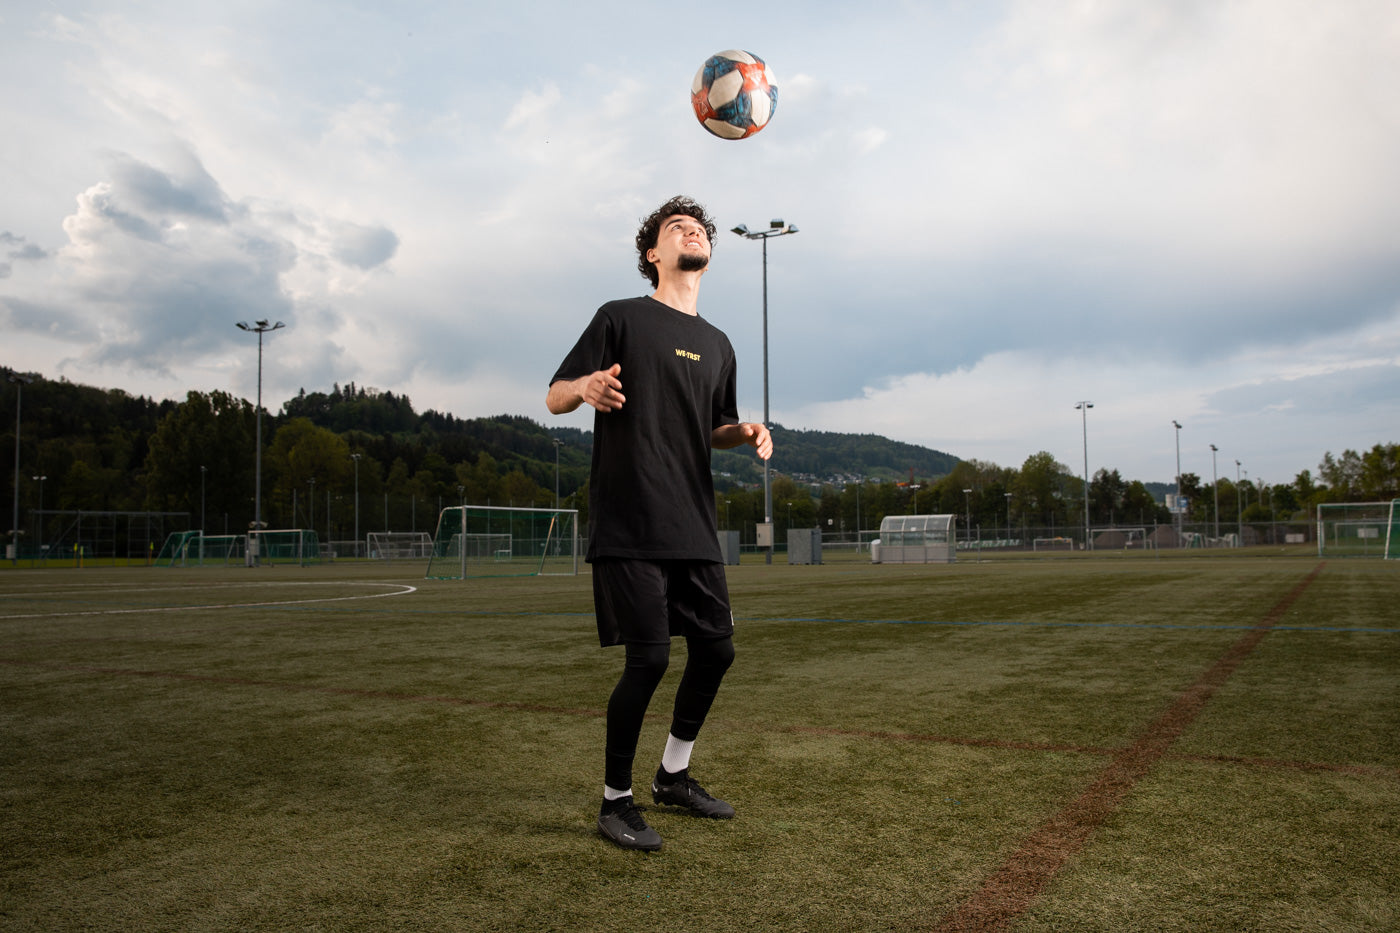 in Mann spielt mit Leidenschaft Fußball auf dem grünen Rasen. Er trägt ein dynamisches T-Shirt von WE•TRST, das seinen Einsatz für Zusammenarbeit und Vertrauen verdeutlicht.